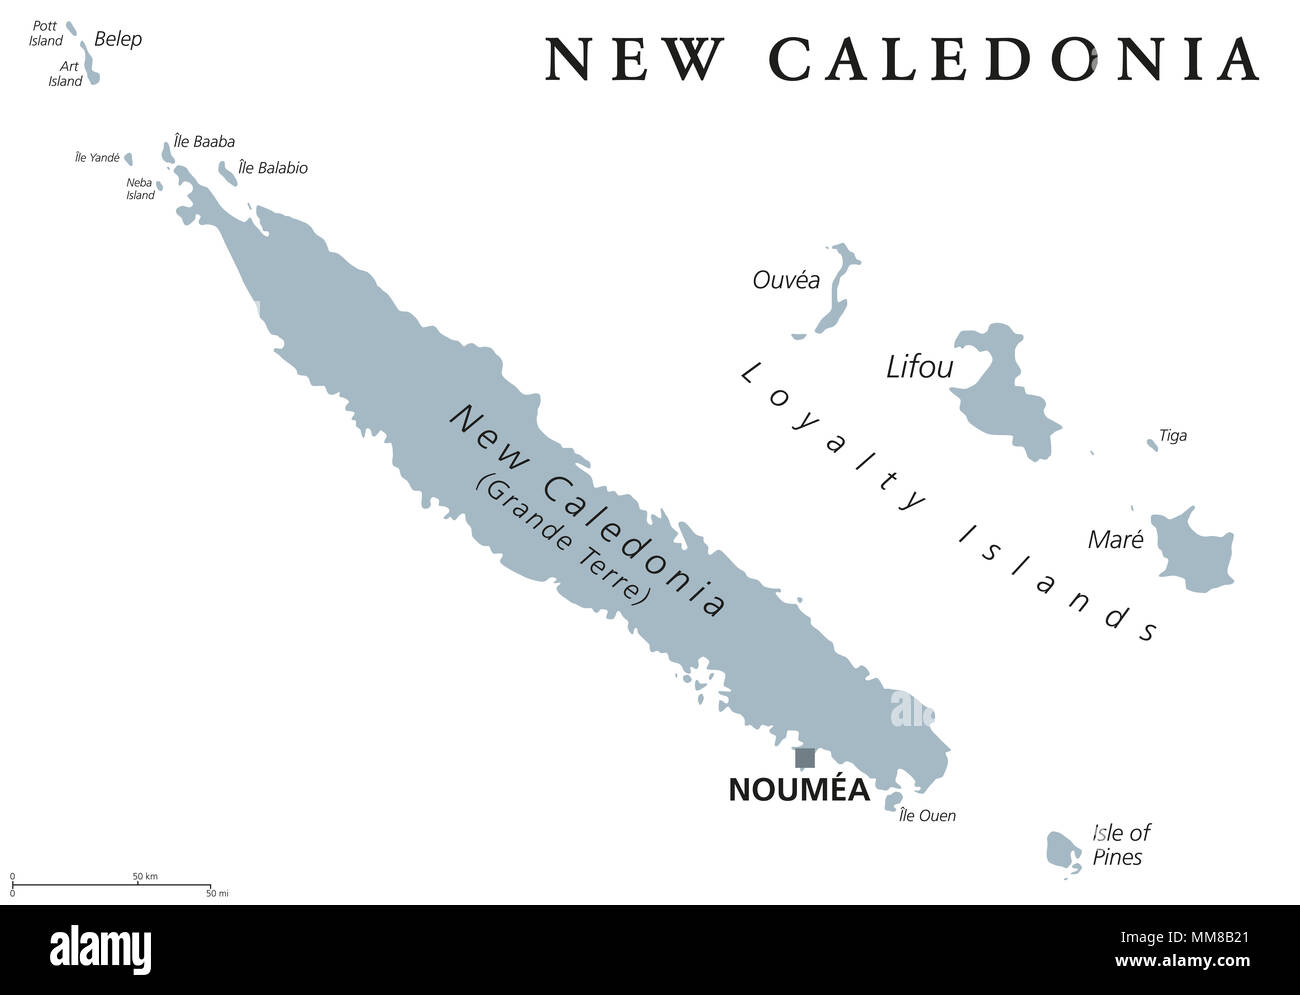 Новая каледония на карте. Остров новая Каледония на карте.